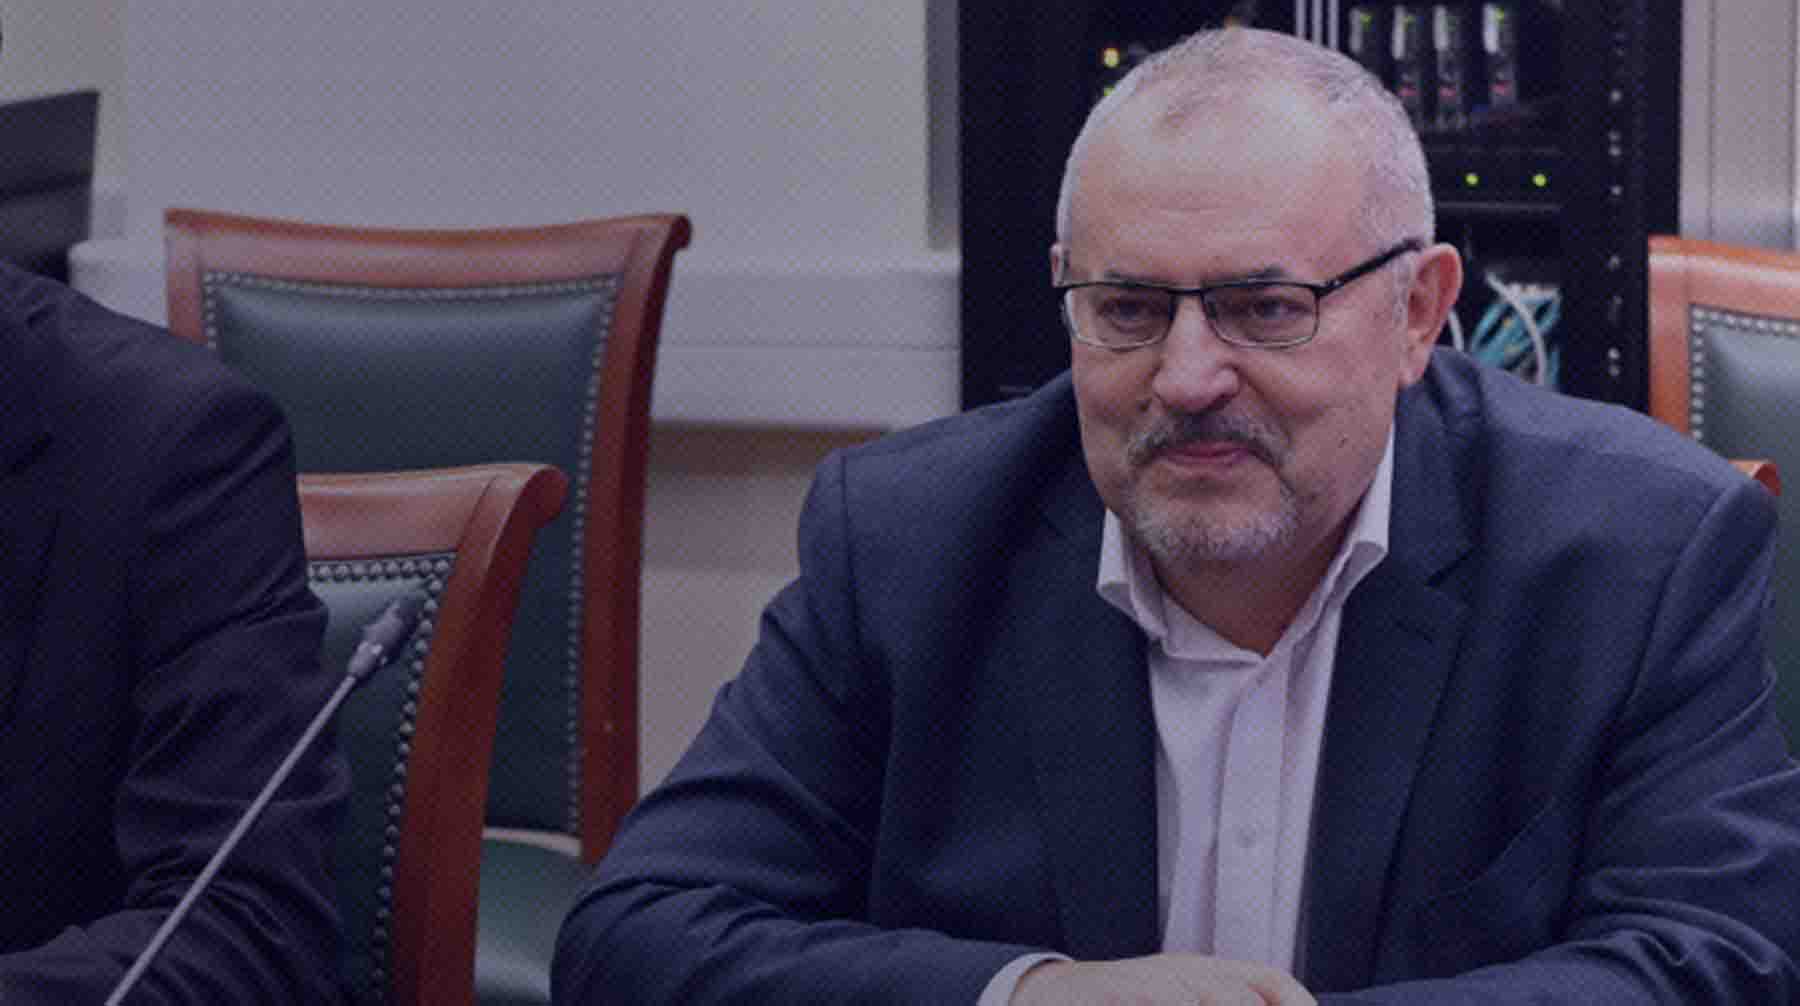 От каждого региона нужно не более 2500 подписей, политик заручился поддержкой в 75 субъектах Борис Надеждин